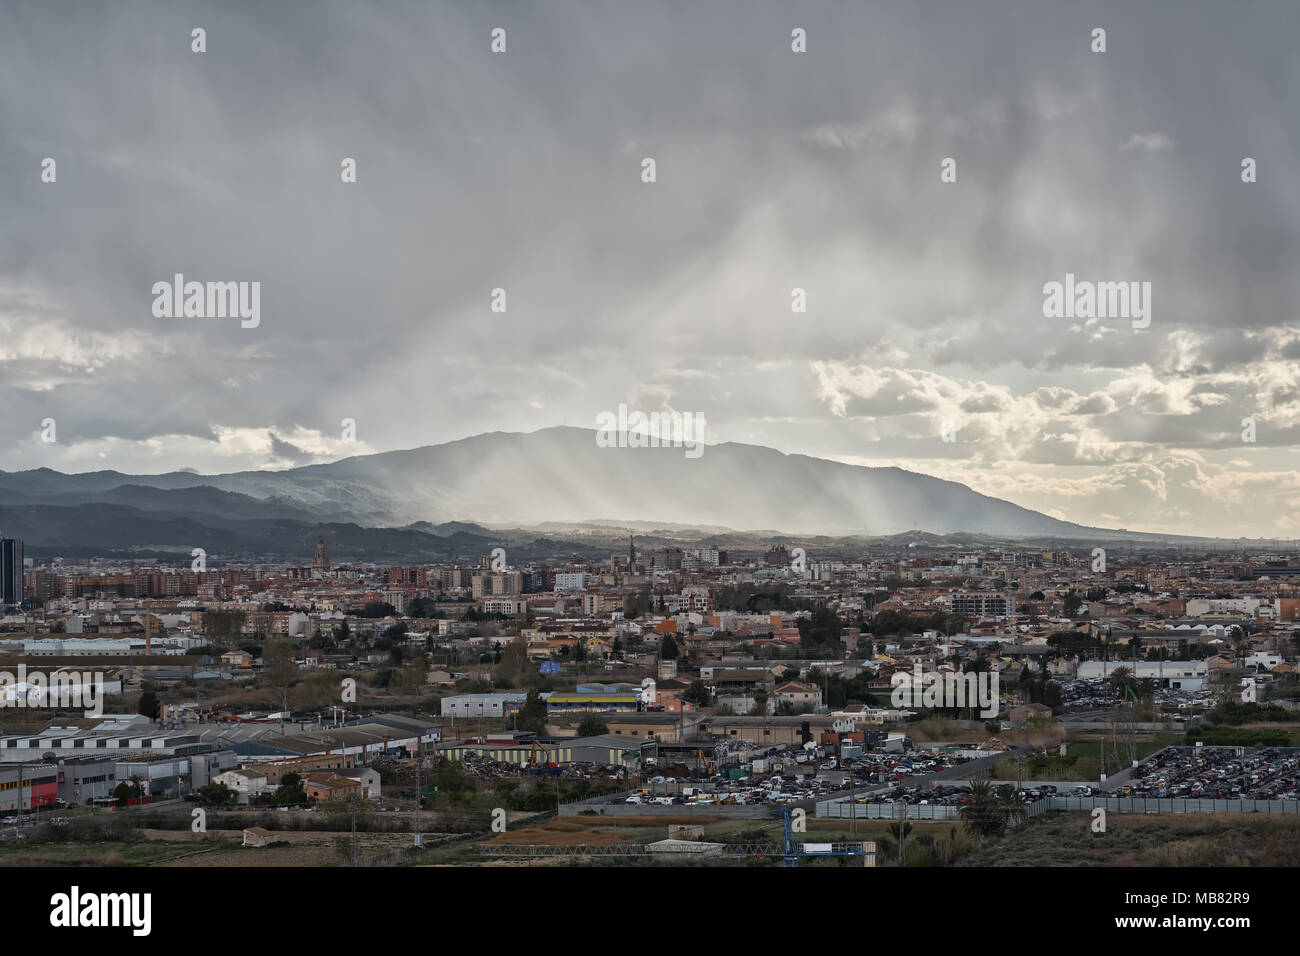 Cielo tormentoso en la ciudad de Murcia, al sureste de España Foto de stock